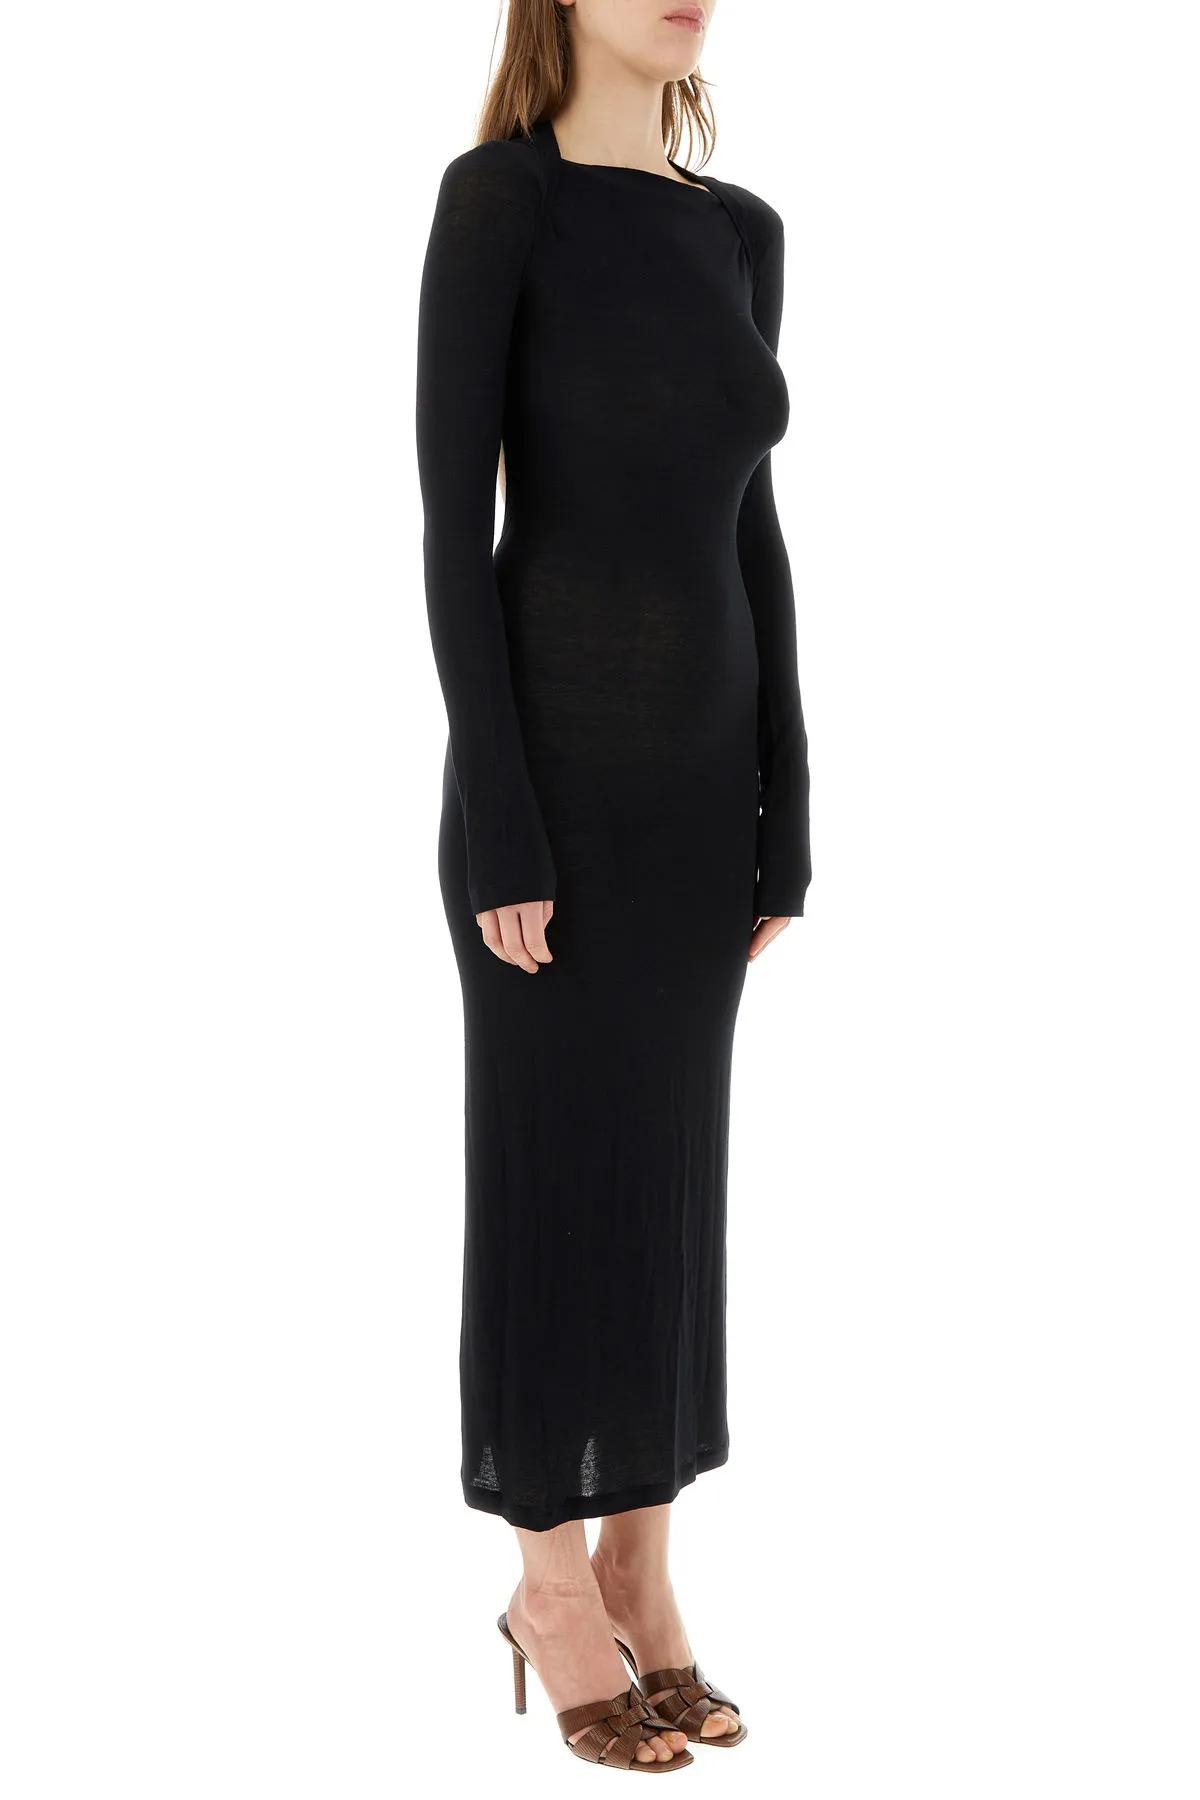 Shop Saint Laurent Black Viscose Blend Dress